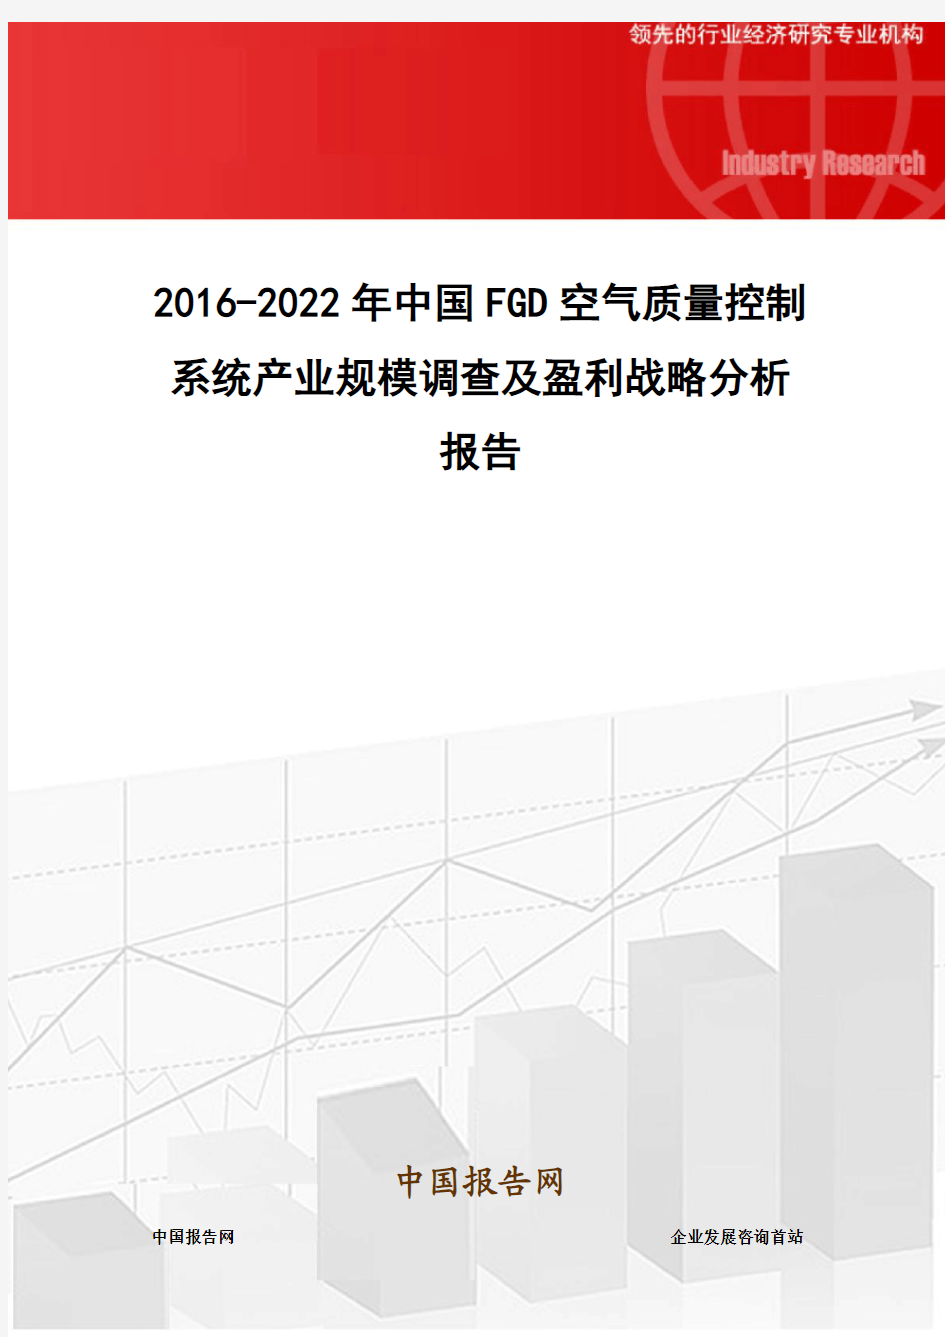 2016-2022年中国FGD空气质量控制系统产业规模调查及盈利战略分析报告